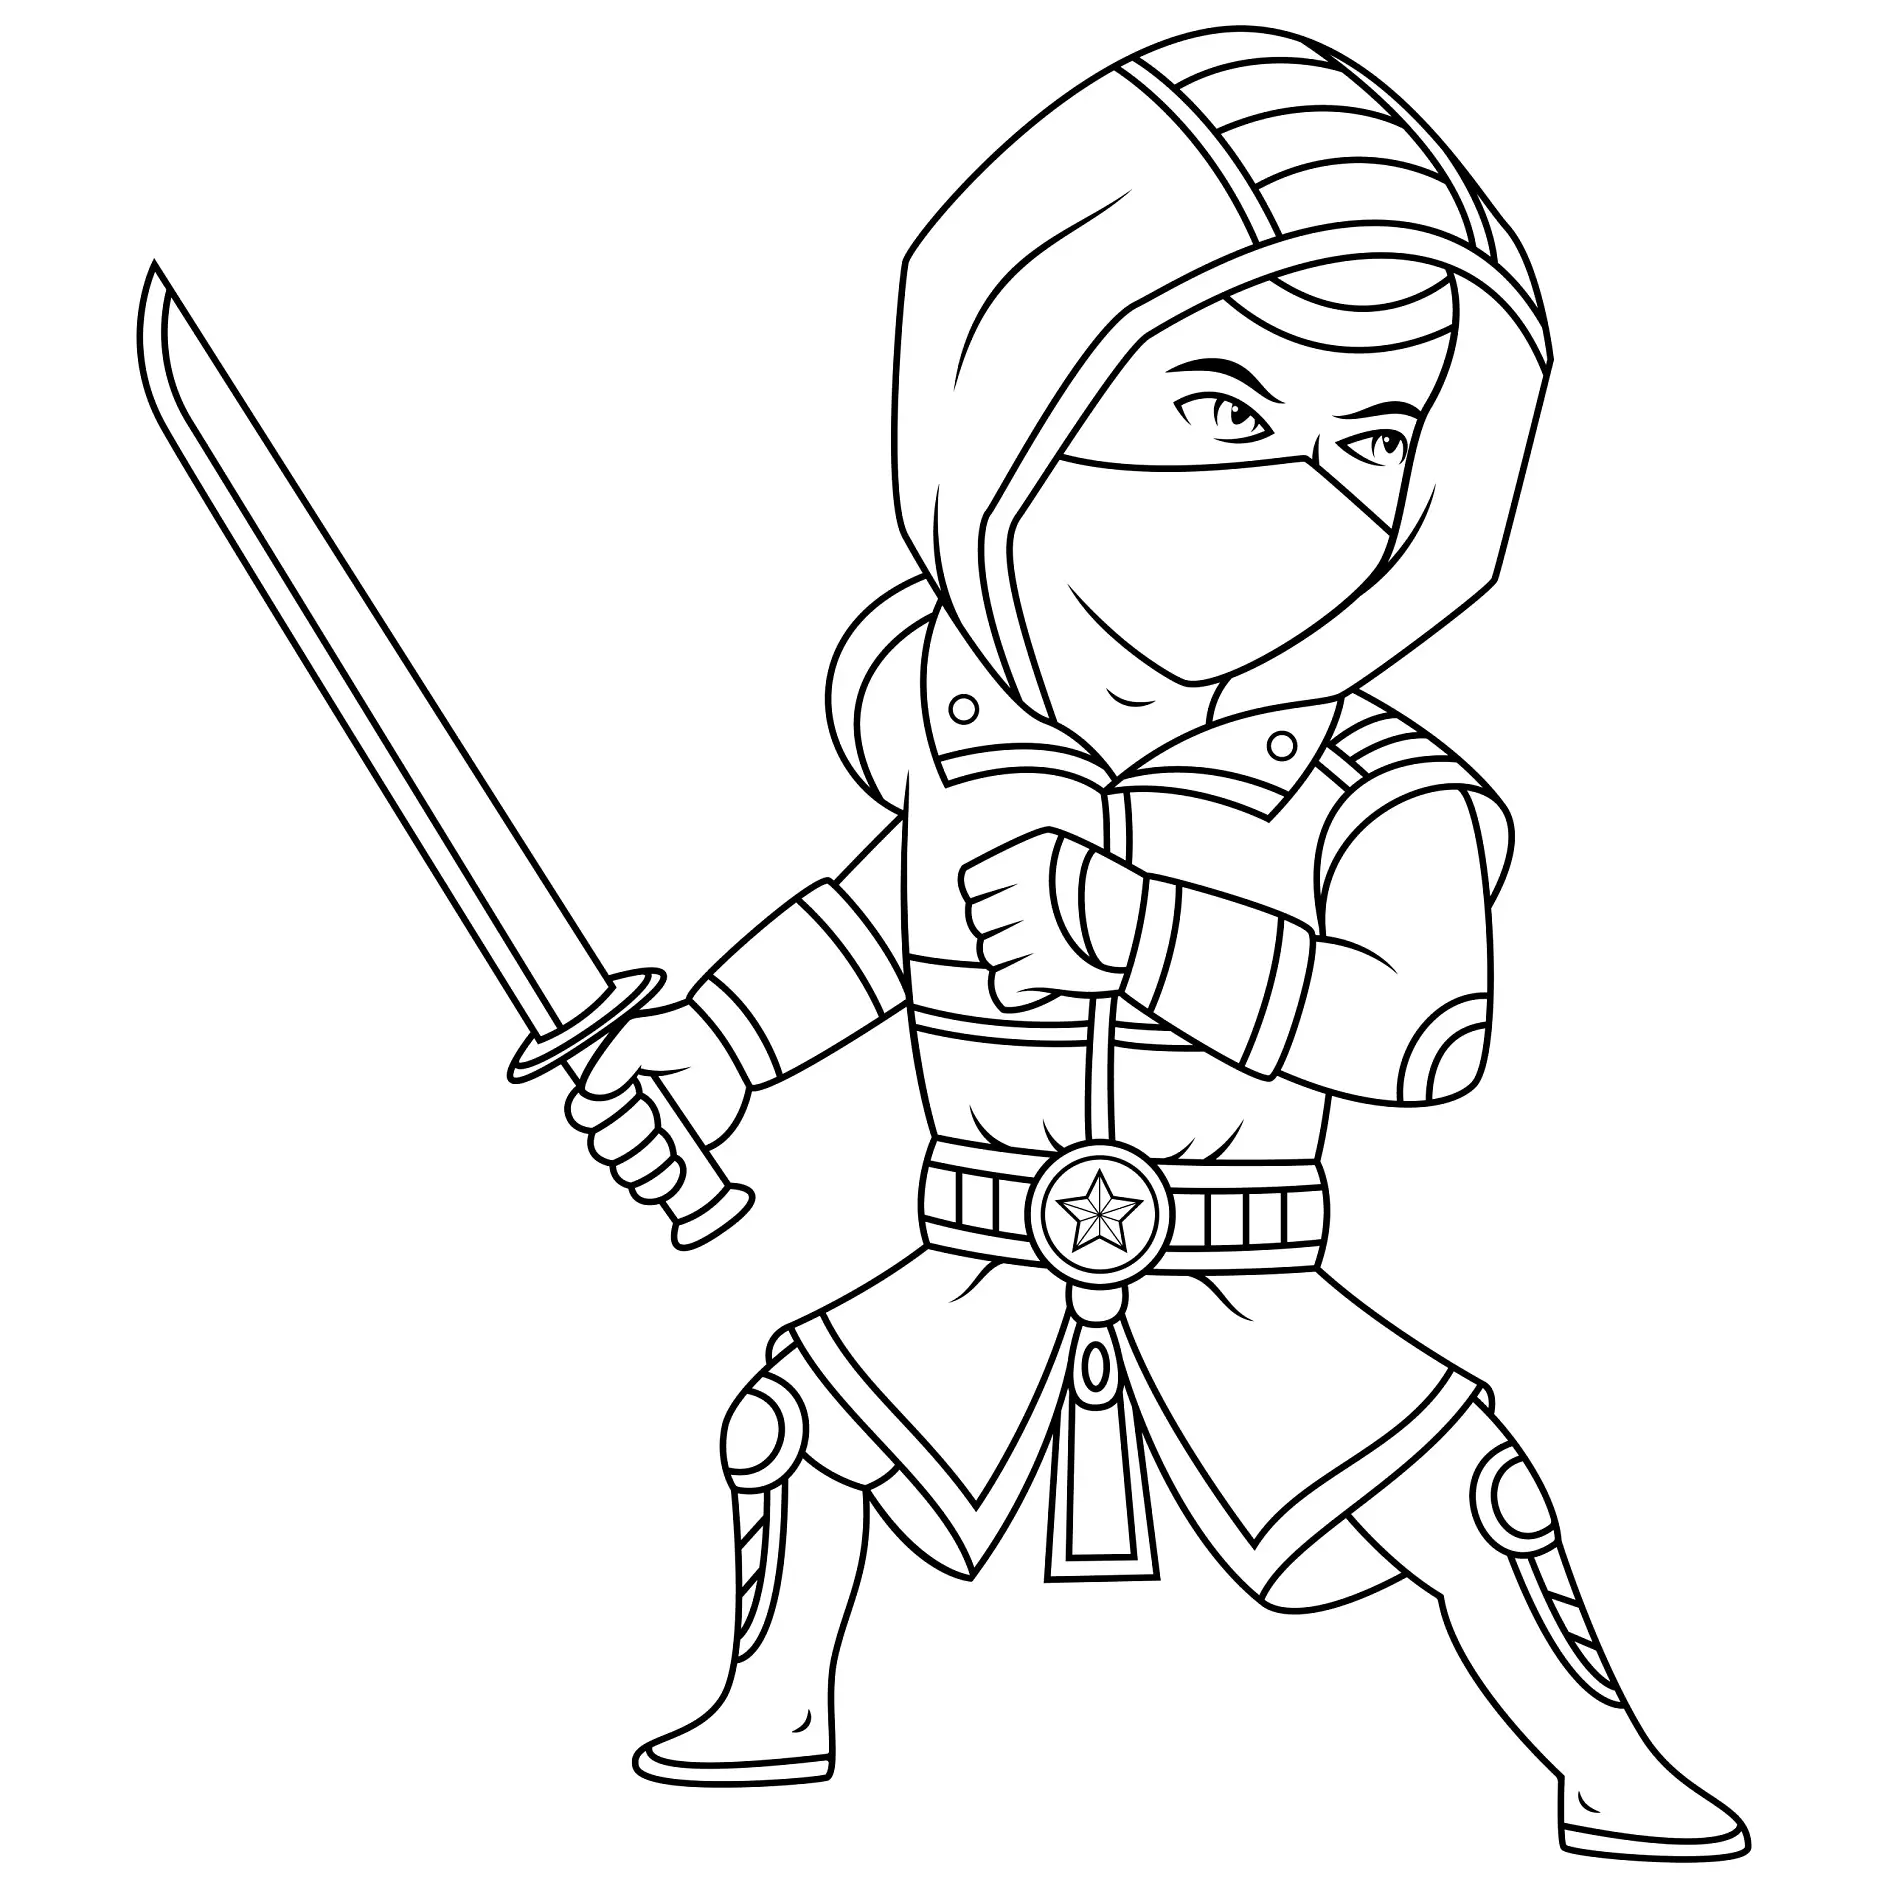 Ausmalbild Ninja mit Kapuze und gezogenem Schwert